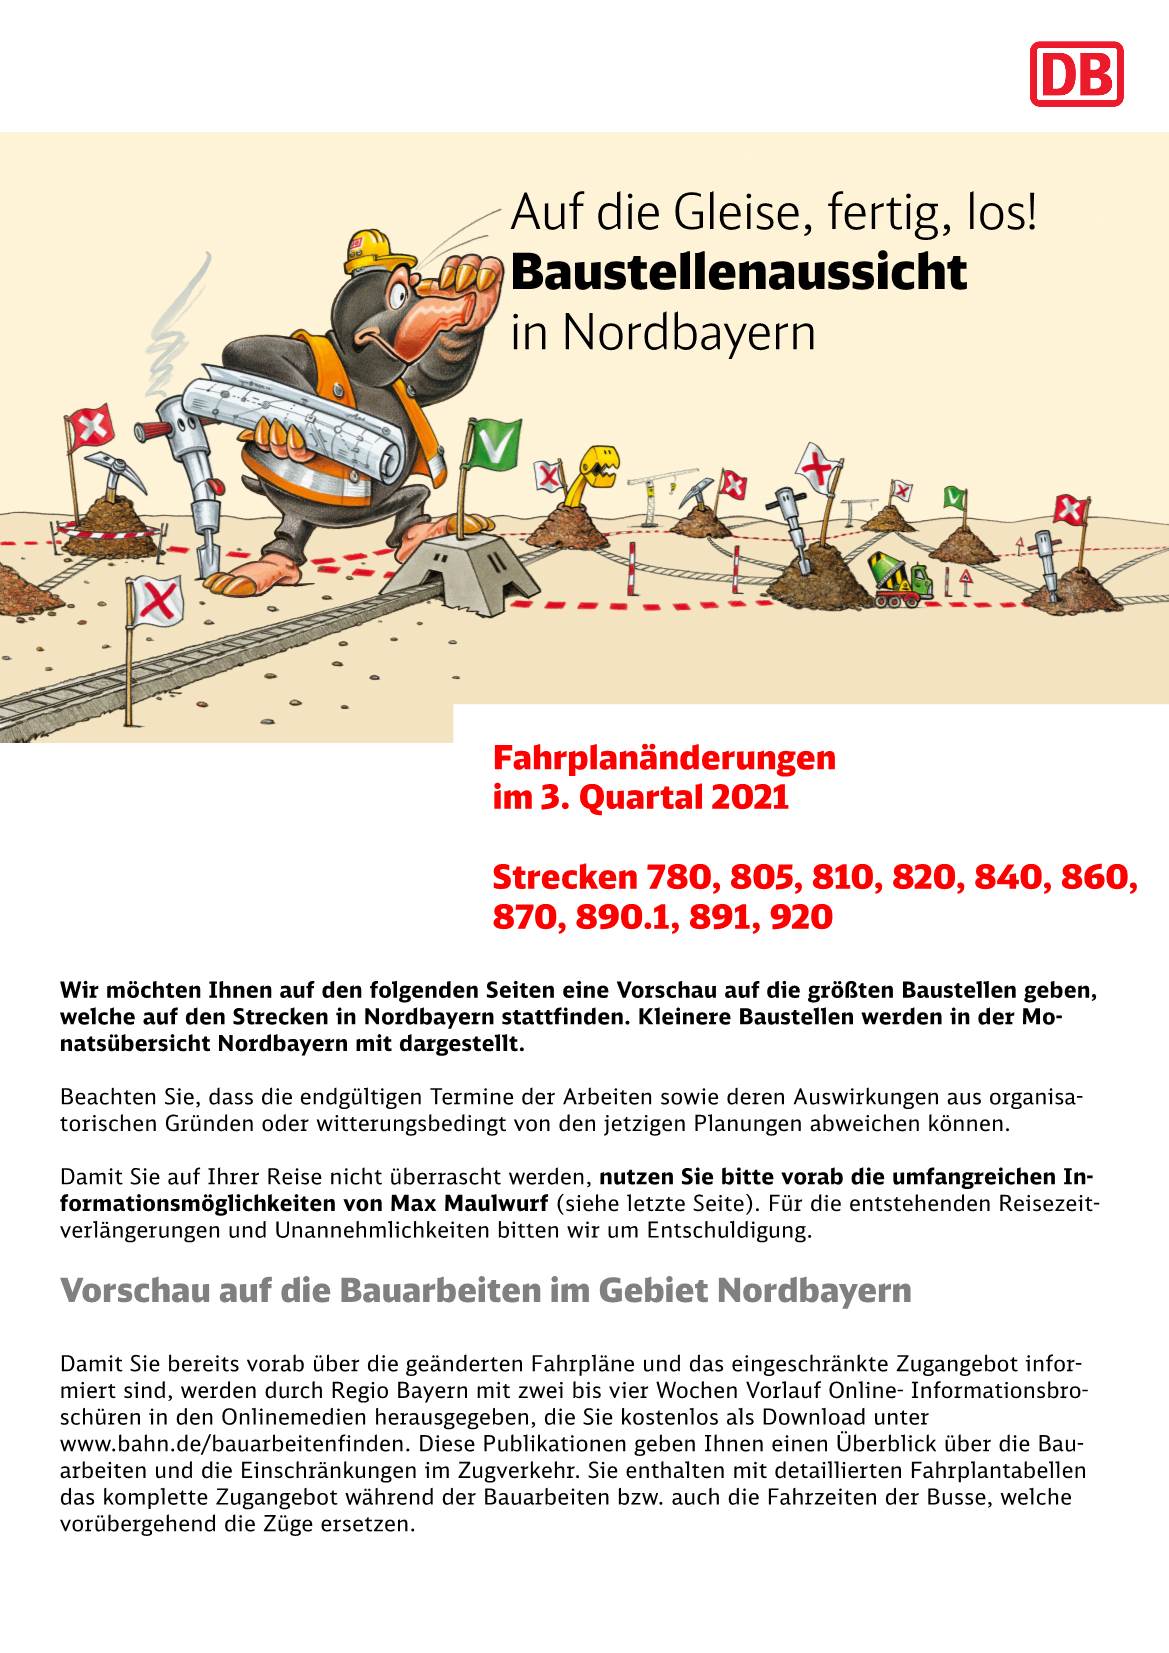 Auf Die Gleise, Fertig, Los! Baustellenaussicht in Nordbayern